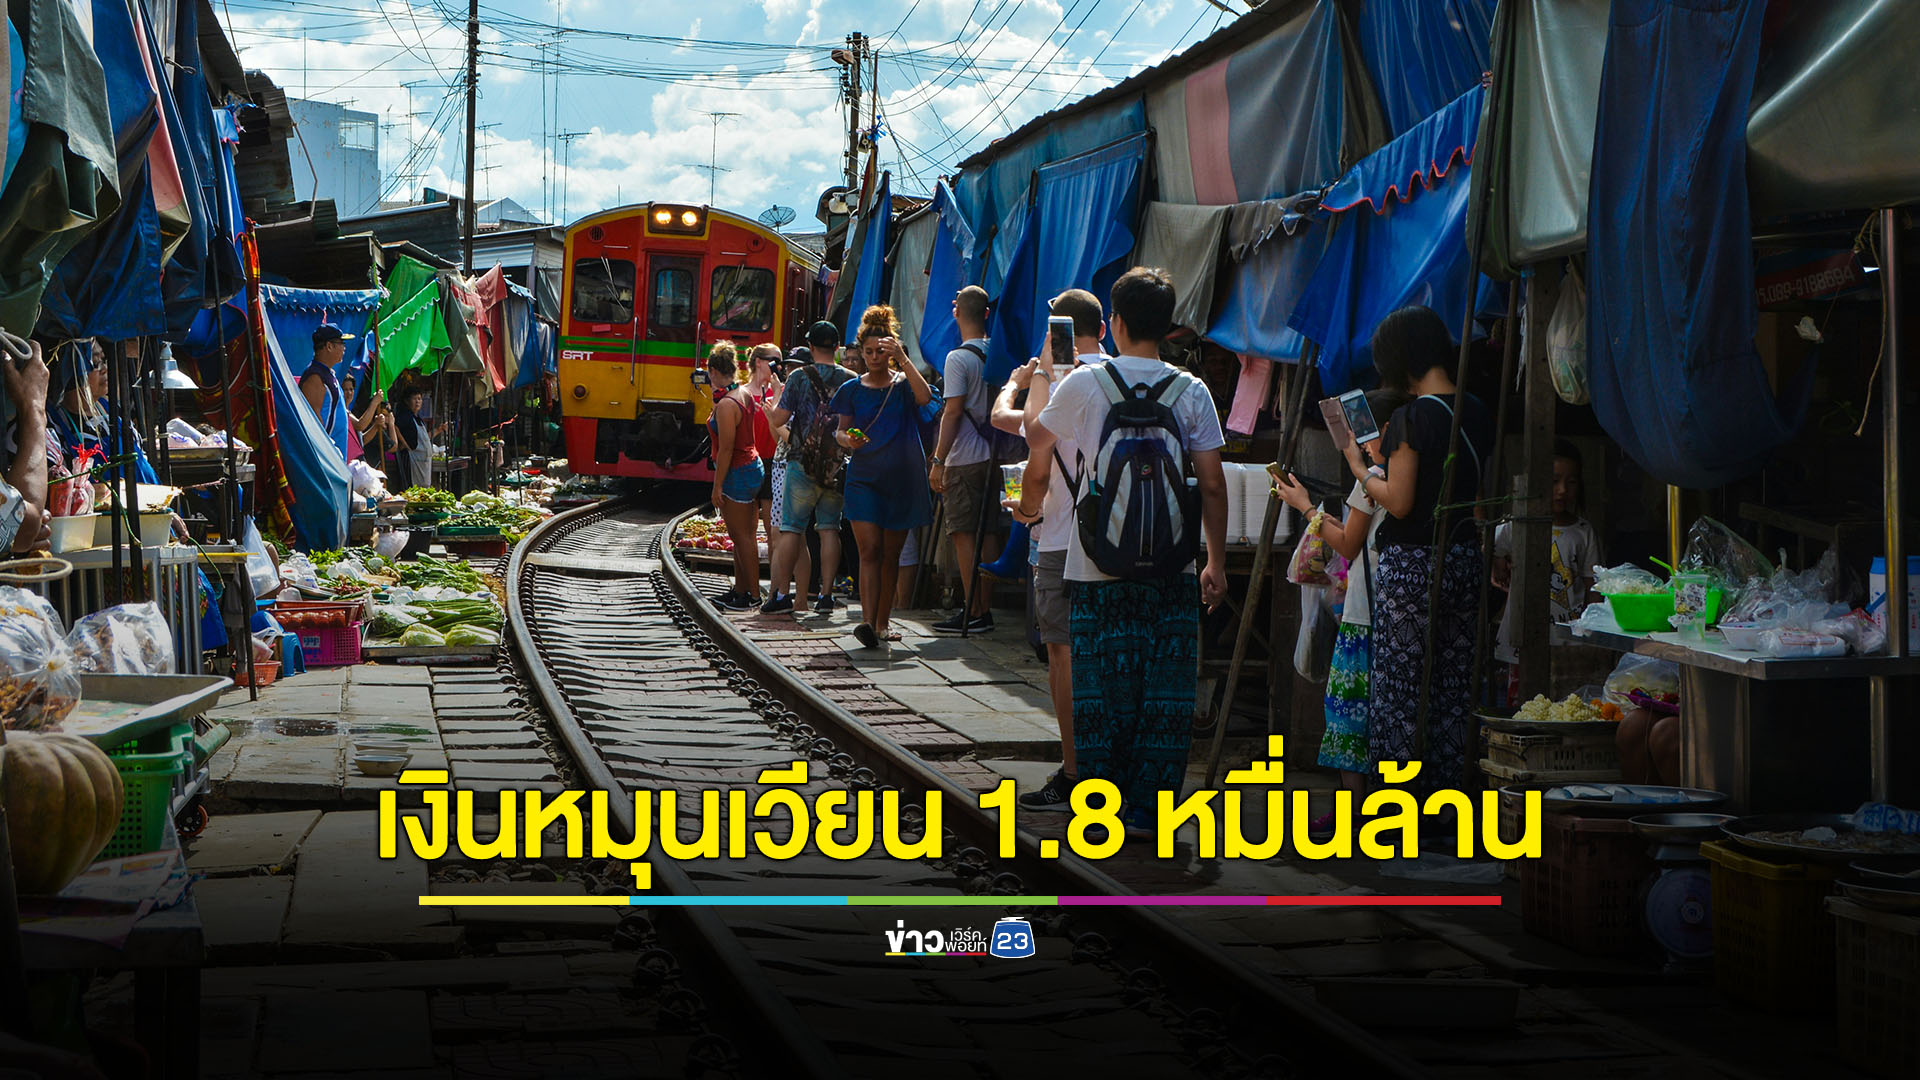 วันหยุดยาวต่อเนื่อง นักท่องเที่ยวไทยสร้างเงินหมุนเวียน 1.8 หมื่นล้าน